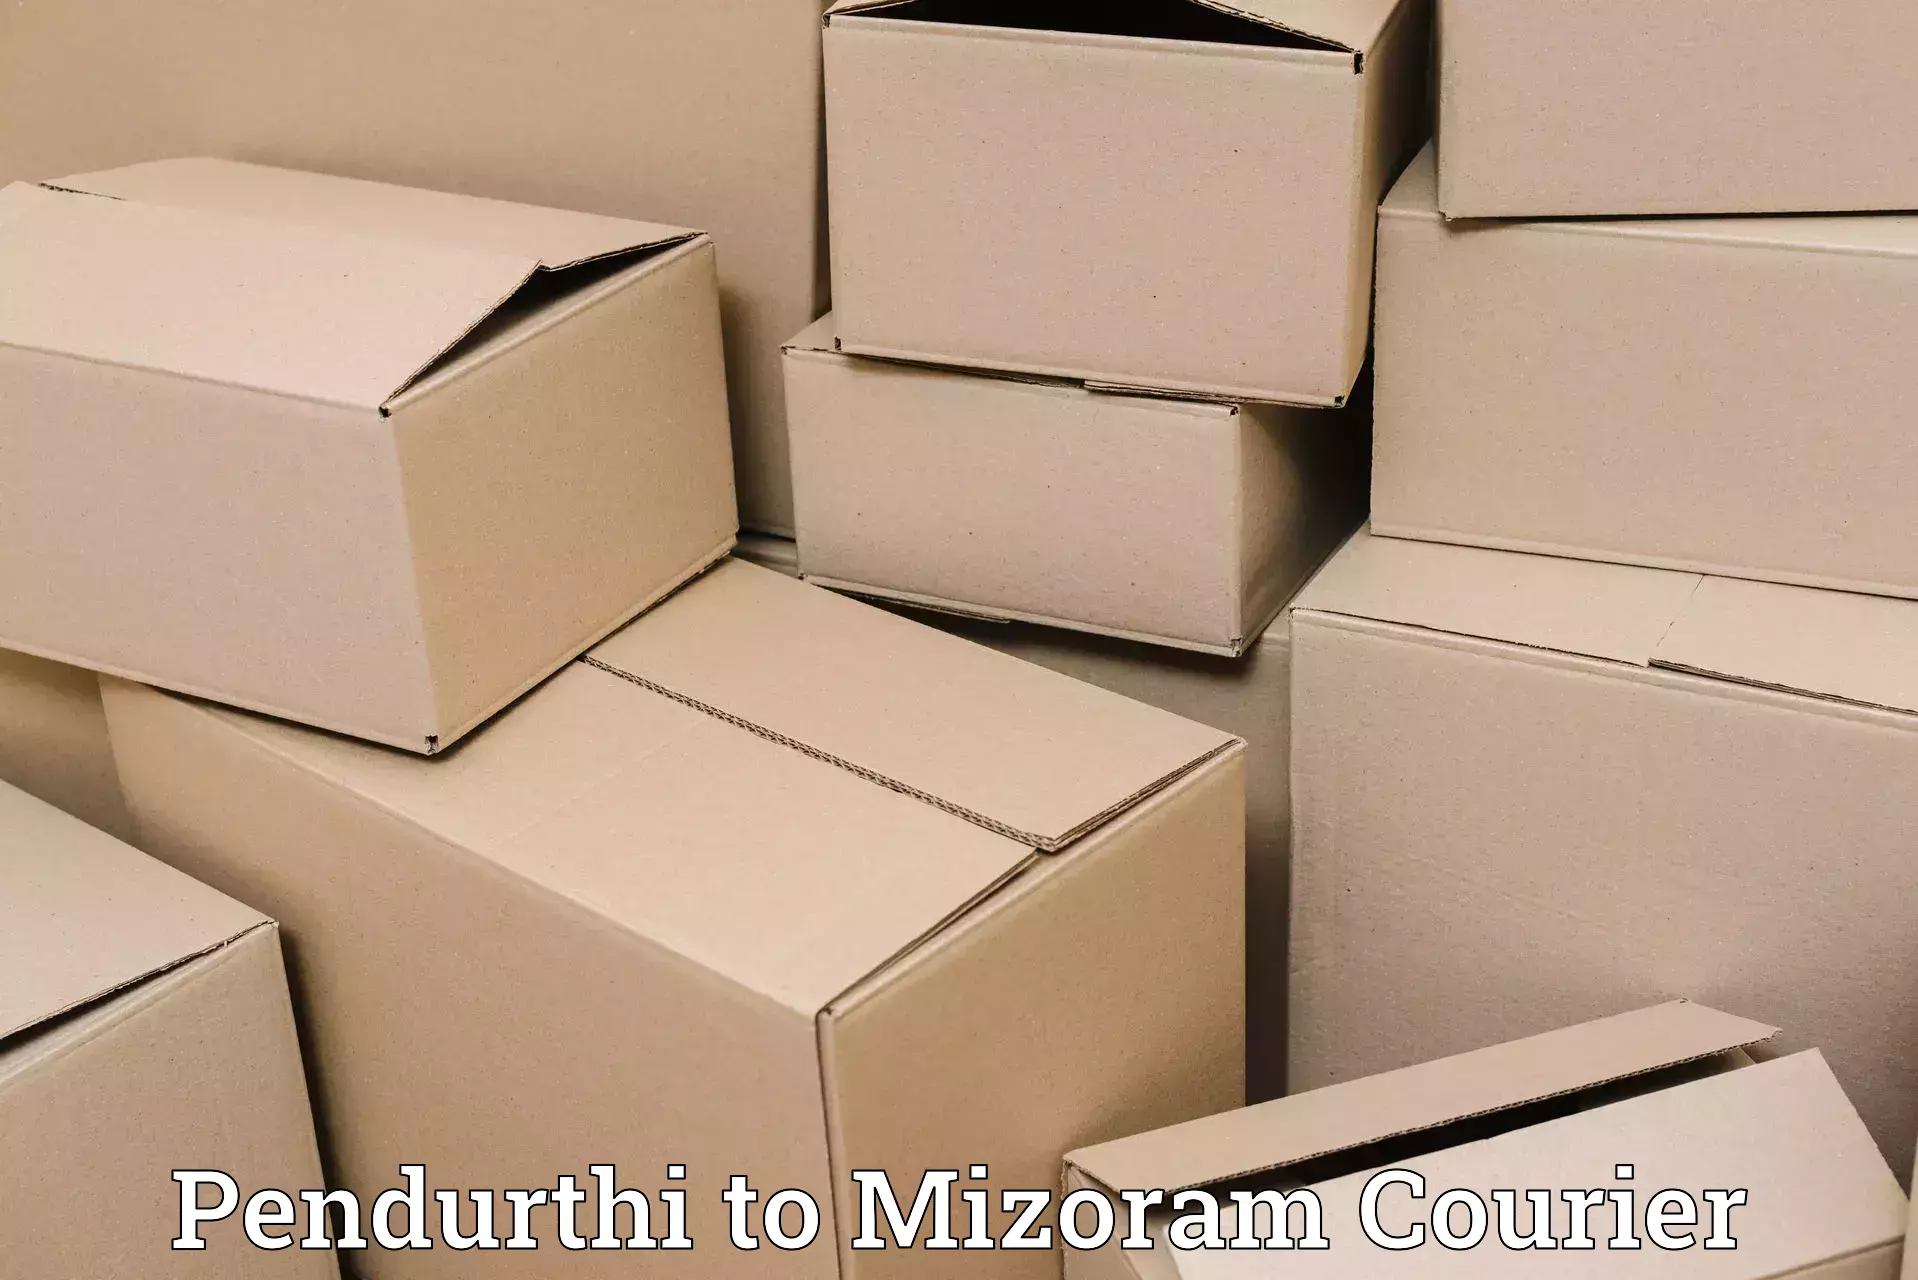 Supply chain efficiency Pendurthi to Mizoram